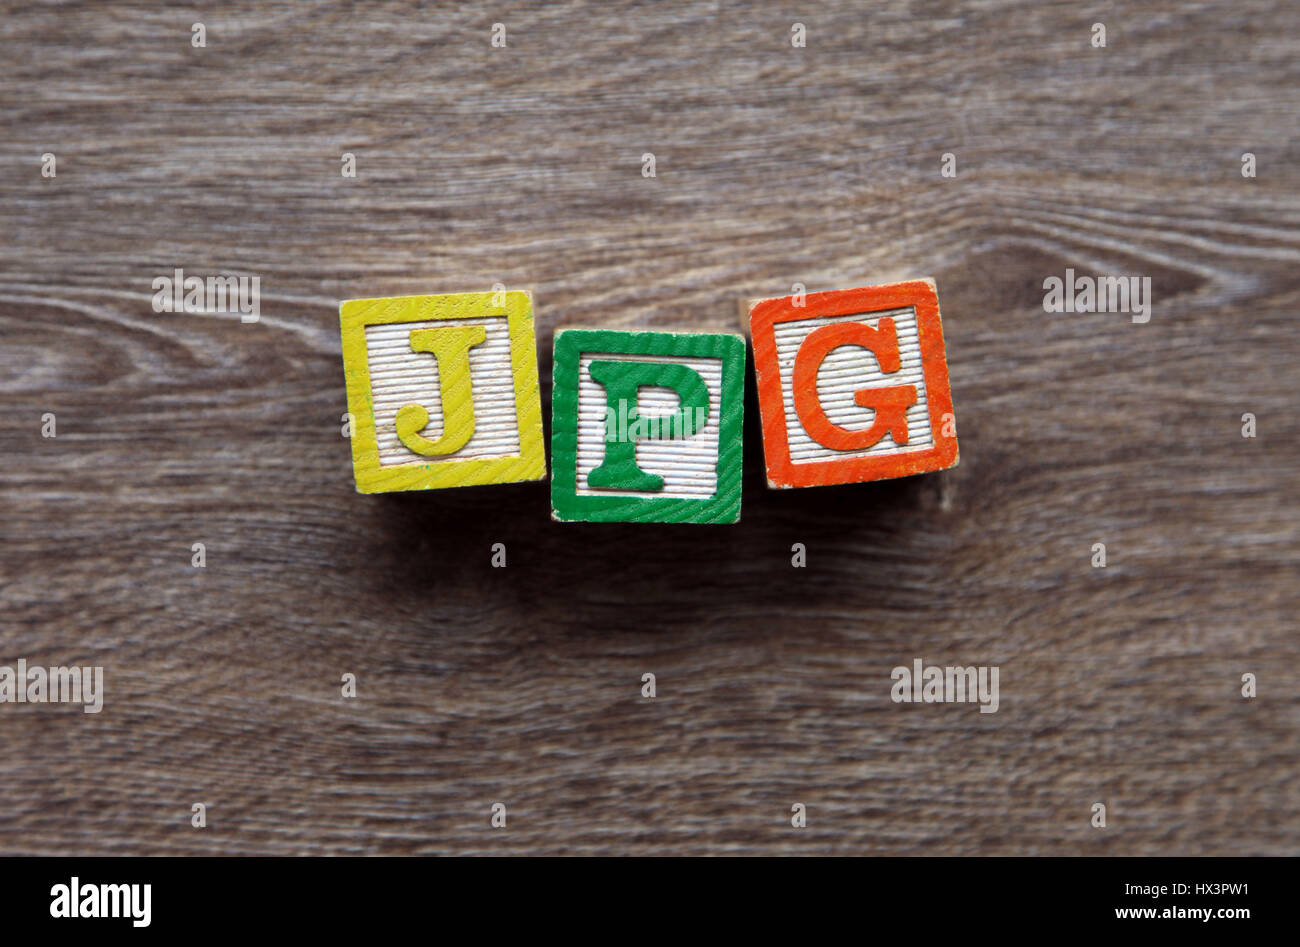 Erweiterung JPG mit Holz-Block-Buchstaben-Alphabet geschrieben Stockfoto